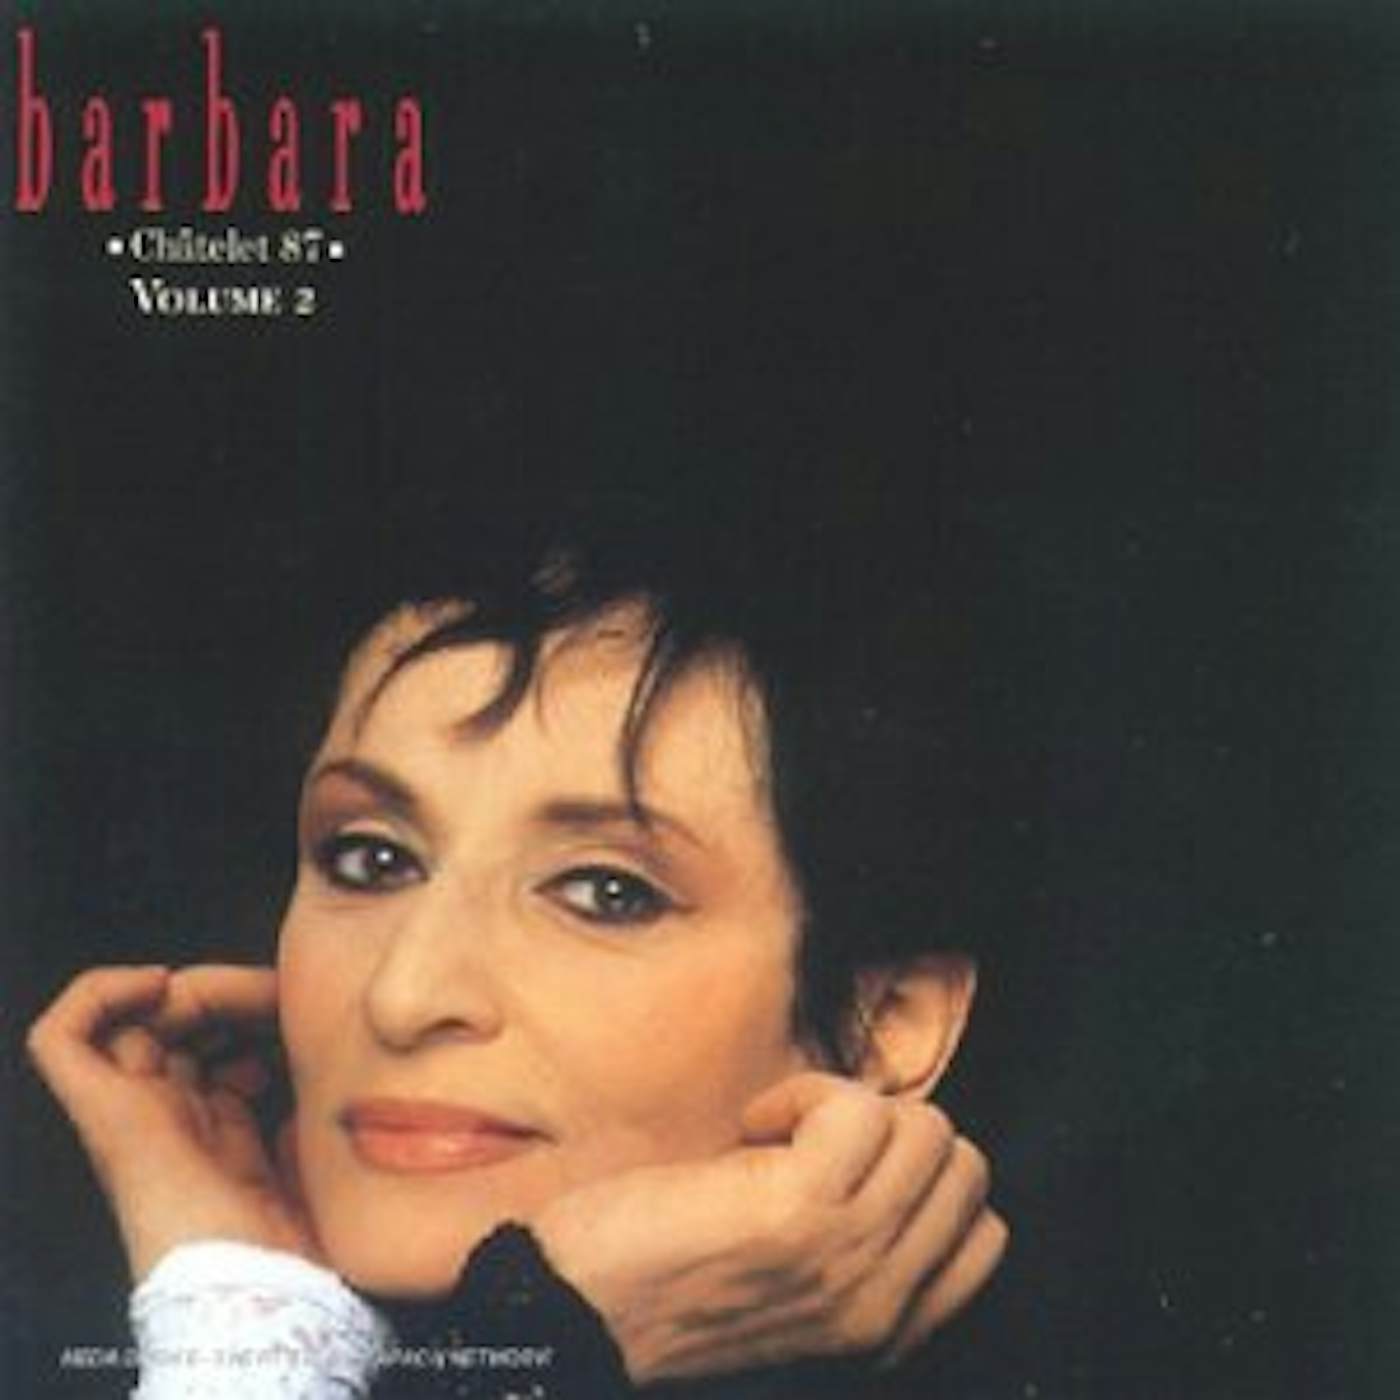 Barbara CHATELET 87 V2 CD